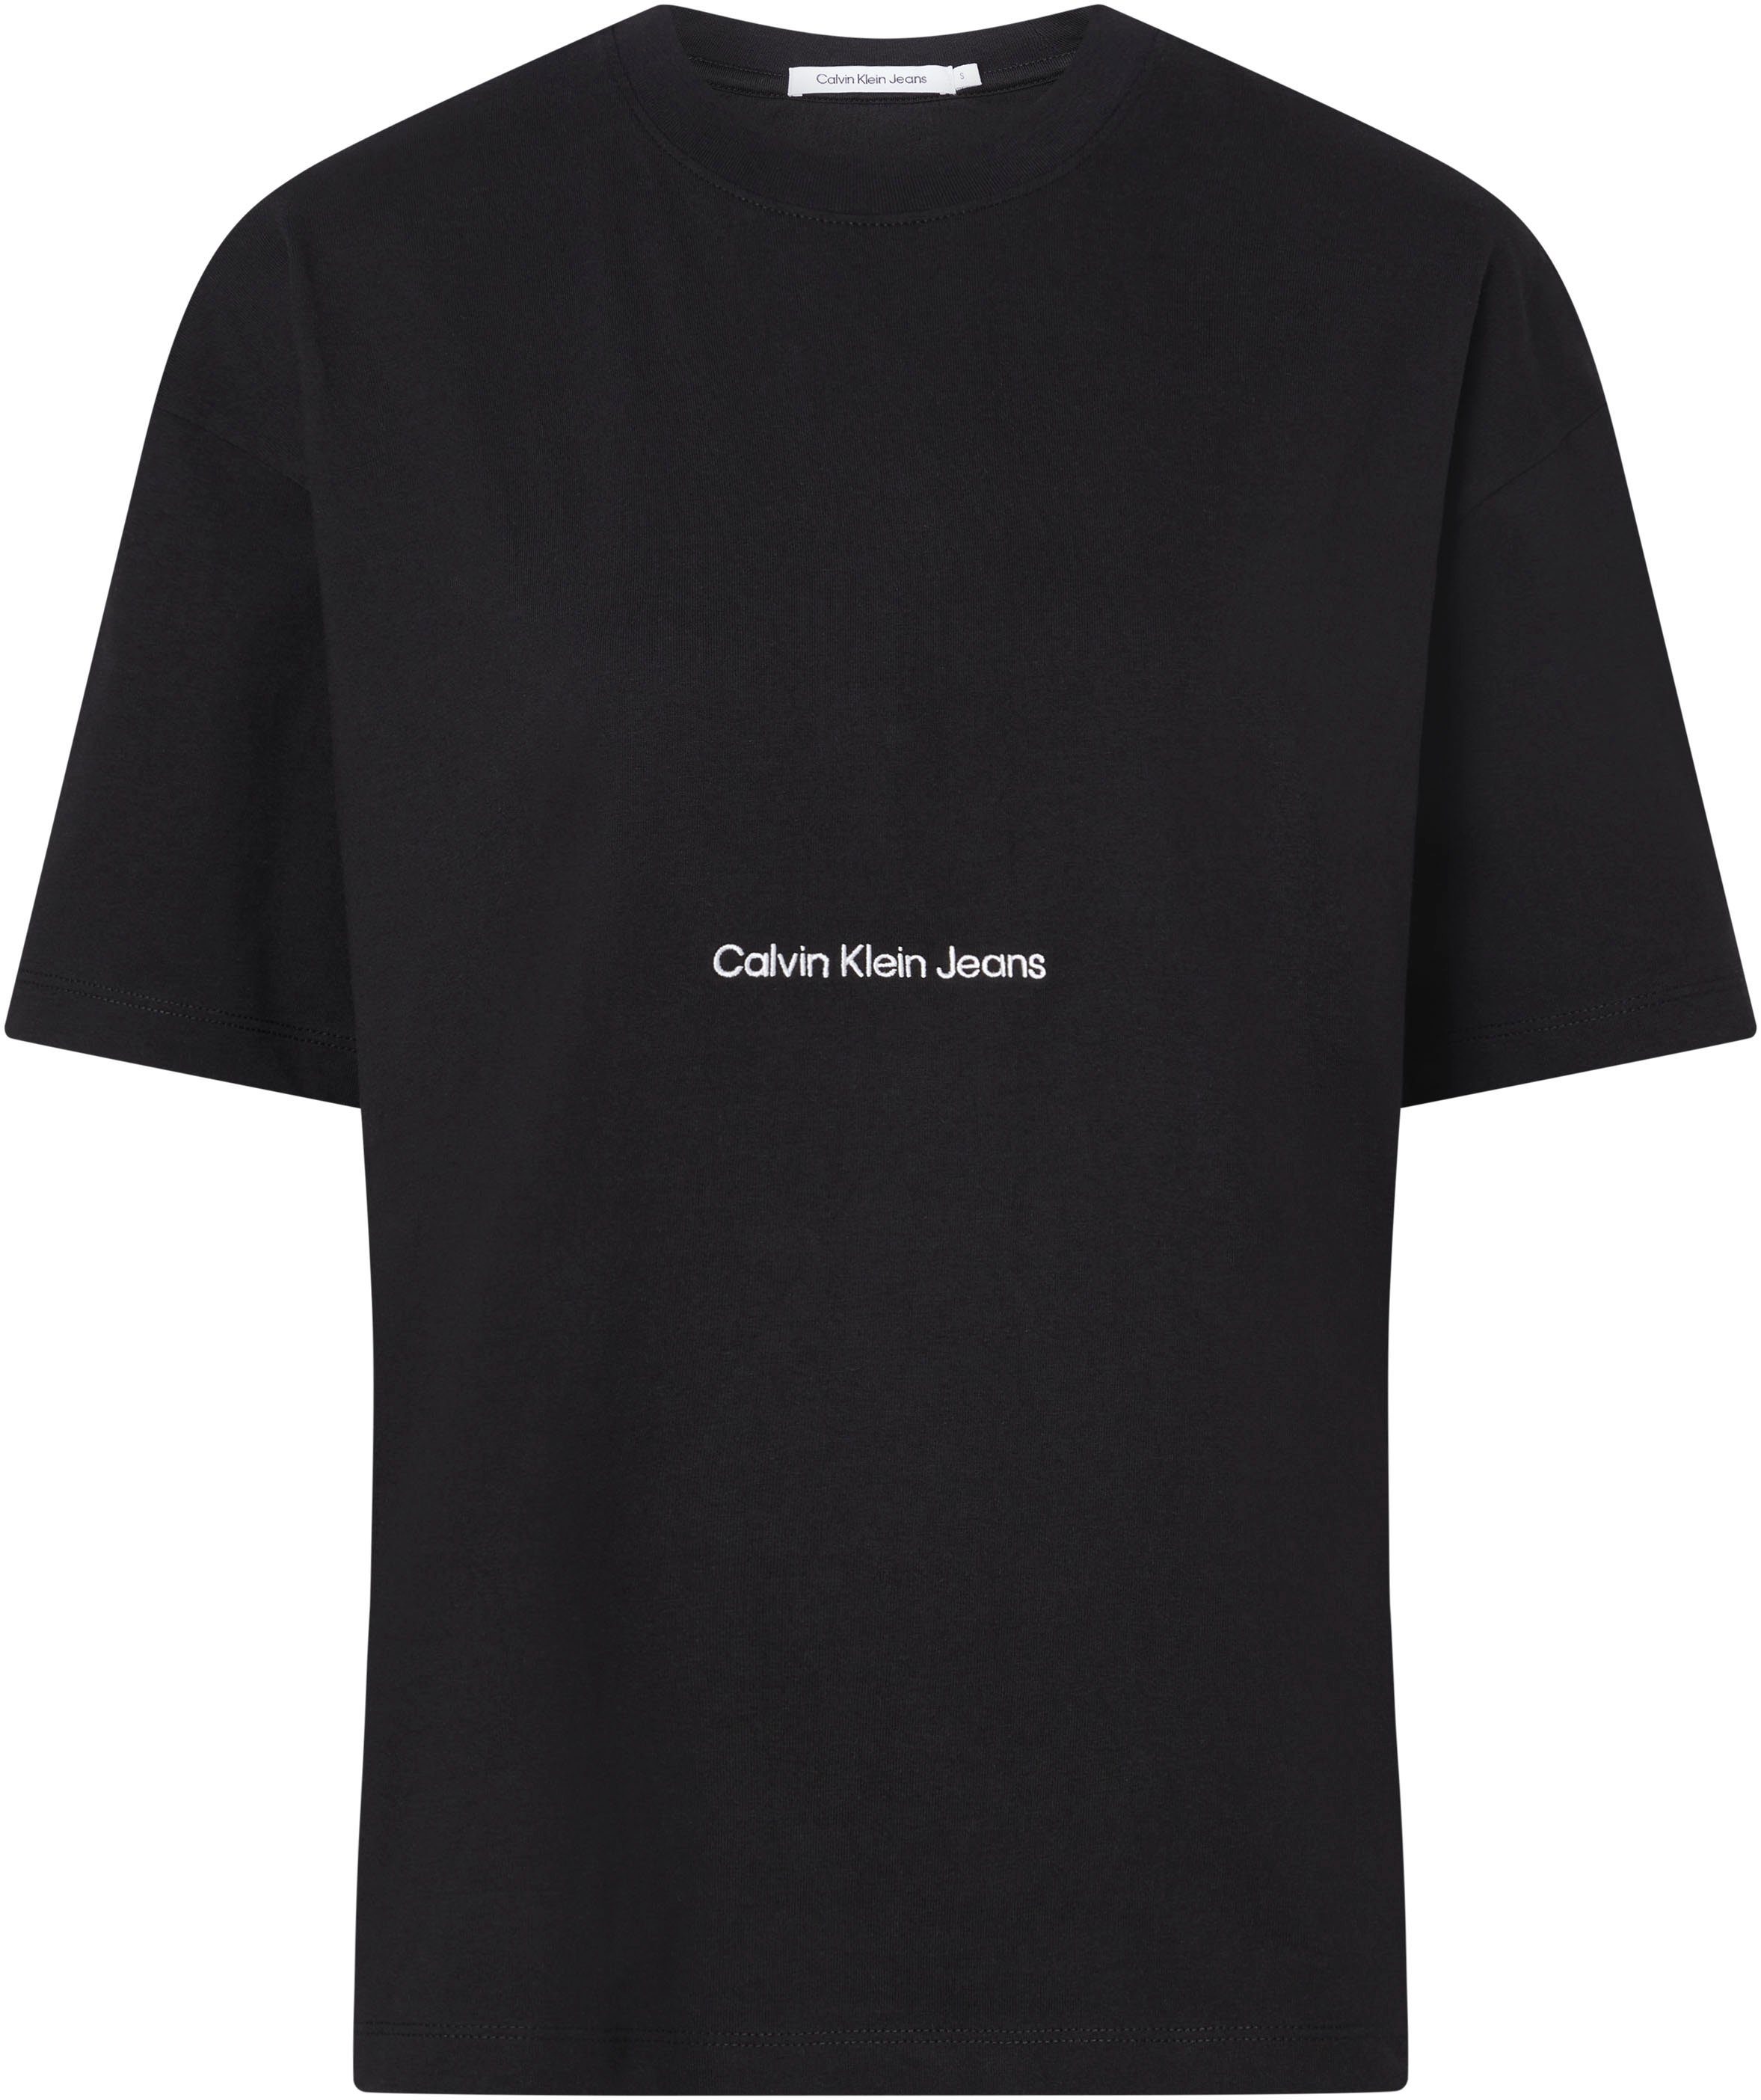 Calvin Klein Jeans mit T-Shirt Plus schwarz Rundhalsausschnitt